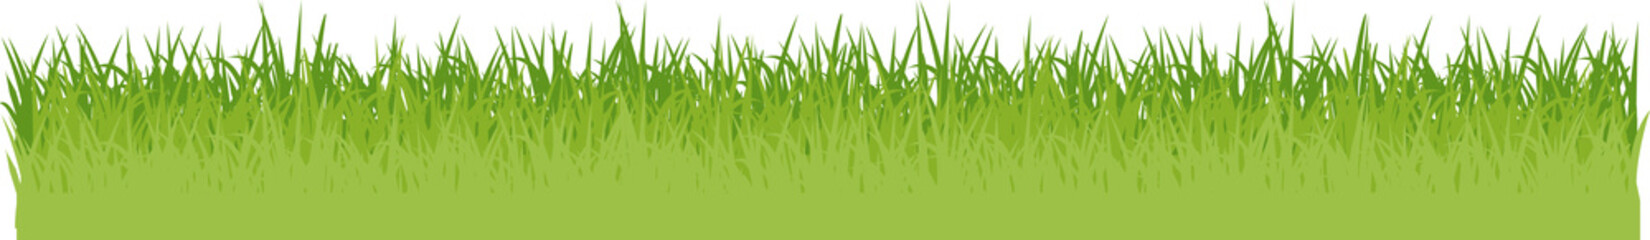 grüne Wiese mit Blumen Gras Flat Design isoliert auf weißem Hintergrund